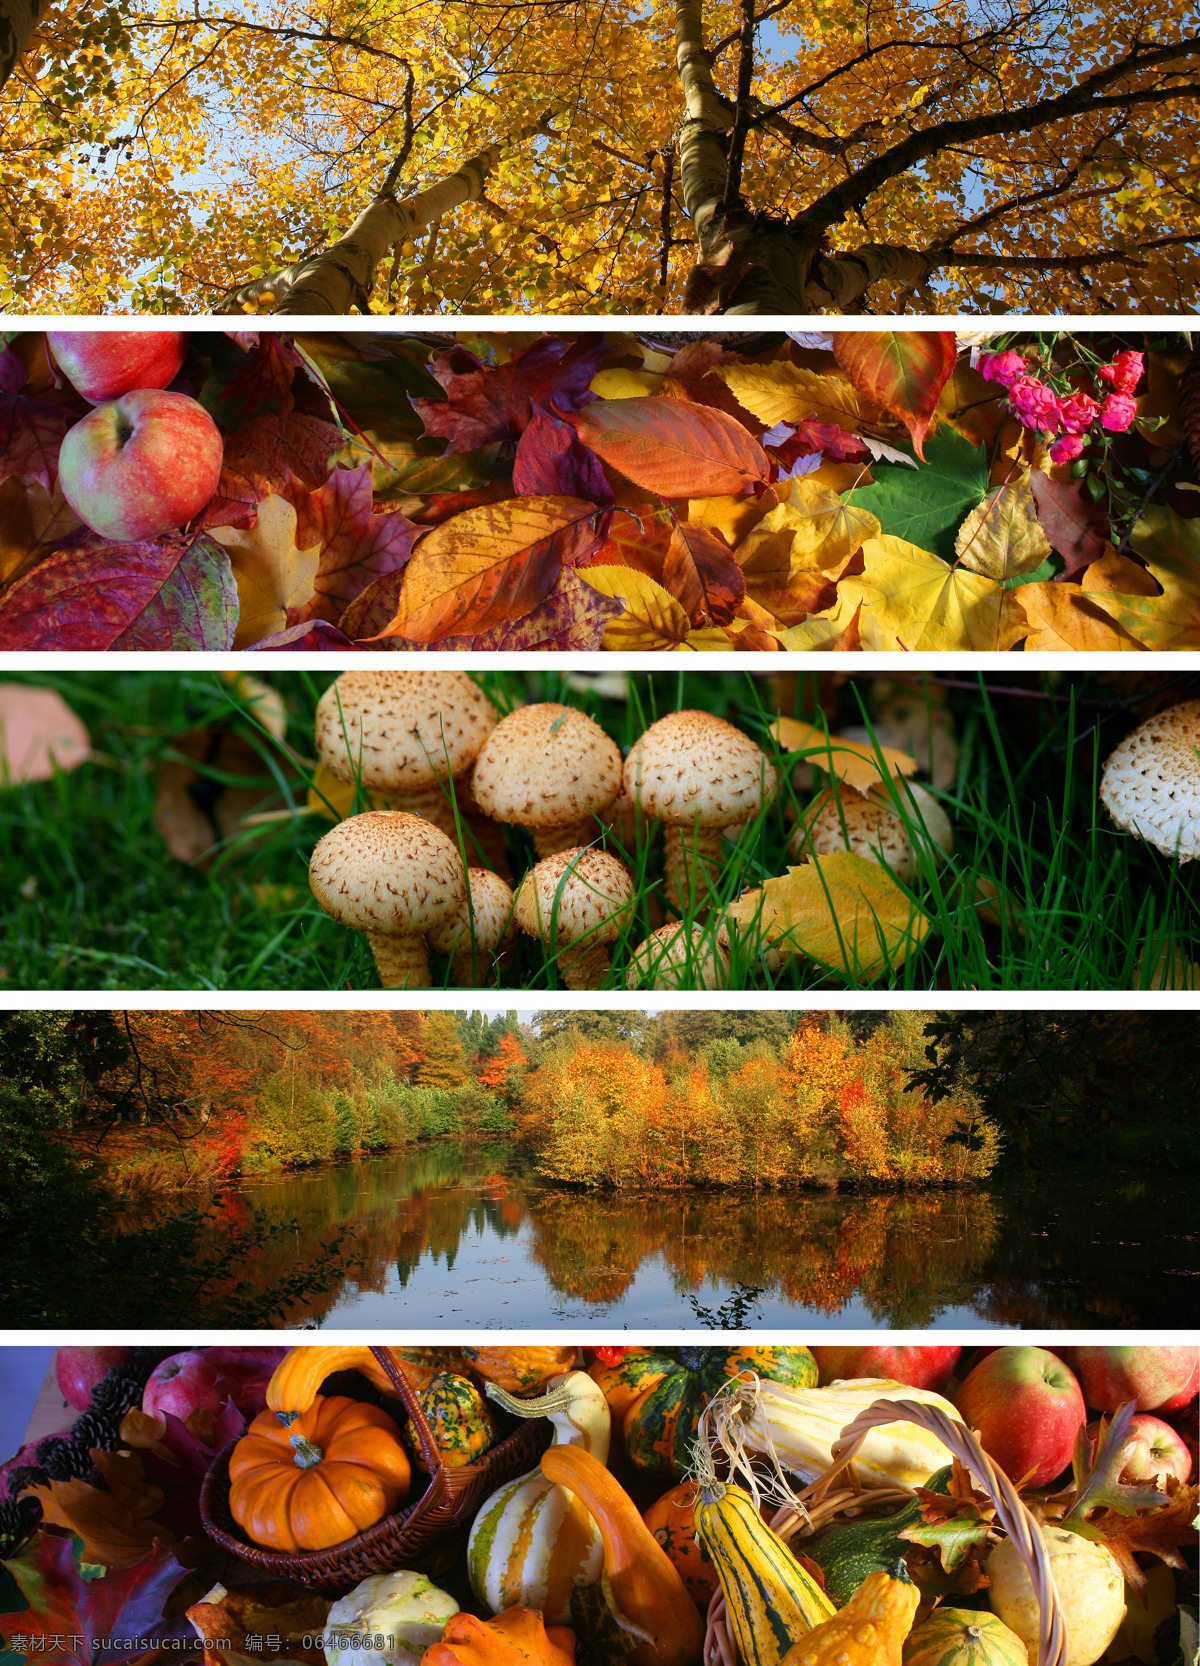 秋季 美丽 树木 落叶 蔬菜水果 美景 美丽的树木 叶子 苹果 蔬菜 水果 黄瓜 绿草地 水面 树林 山水风景 风景图片